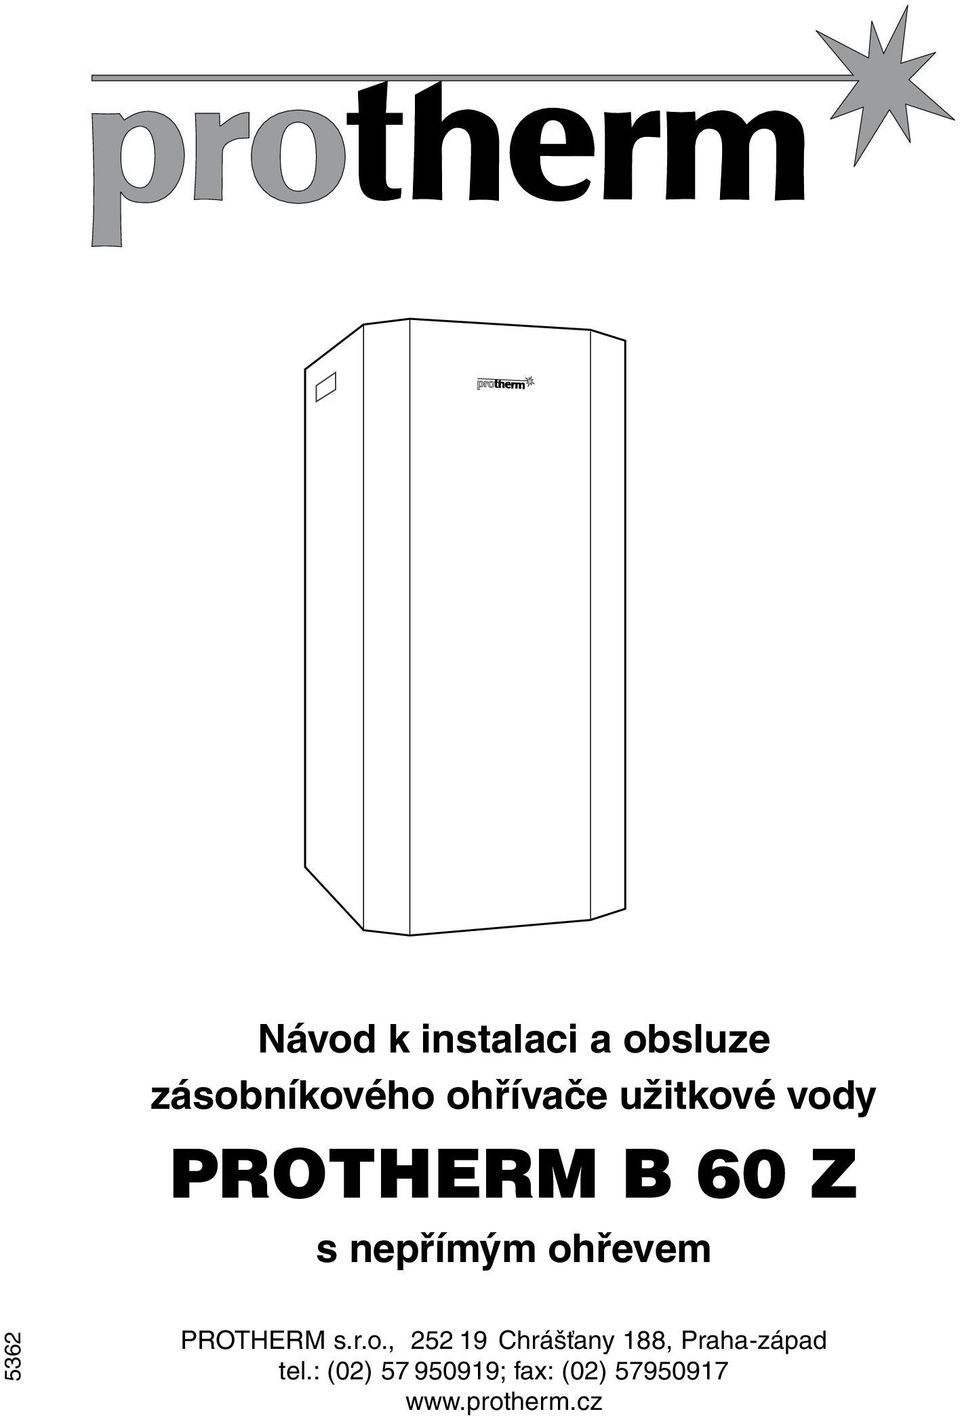 Návod k instalaci a ob slu ze zásobníkového ohřívače užit ko vé vody  PROTHERM B 60 Z. s nepřímým ohřevem - PDF Stažení zdarma